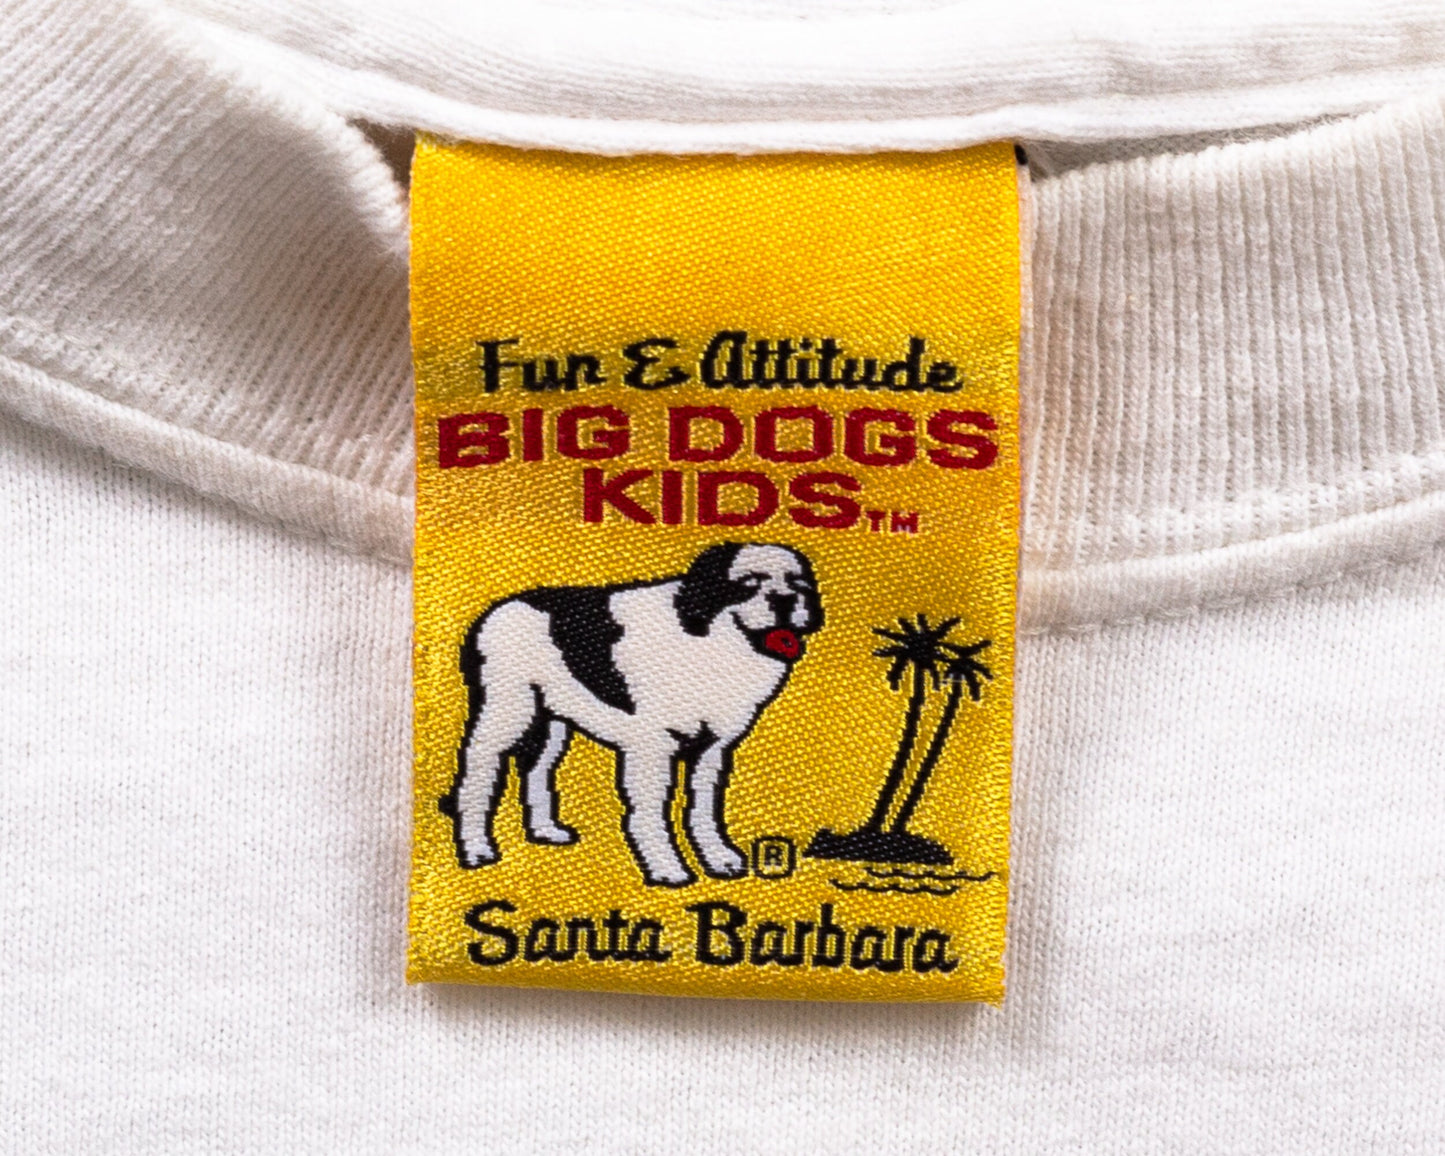 90s Big Dogs "Bad Dog" T Shirt - Medium 